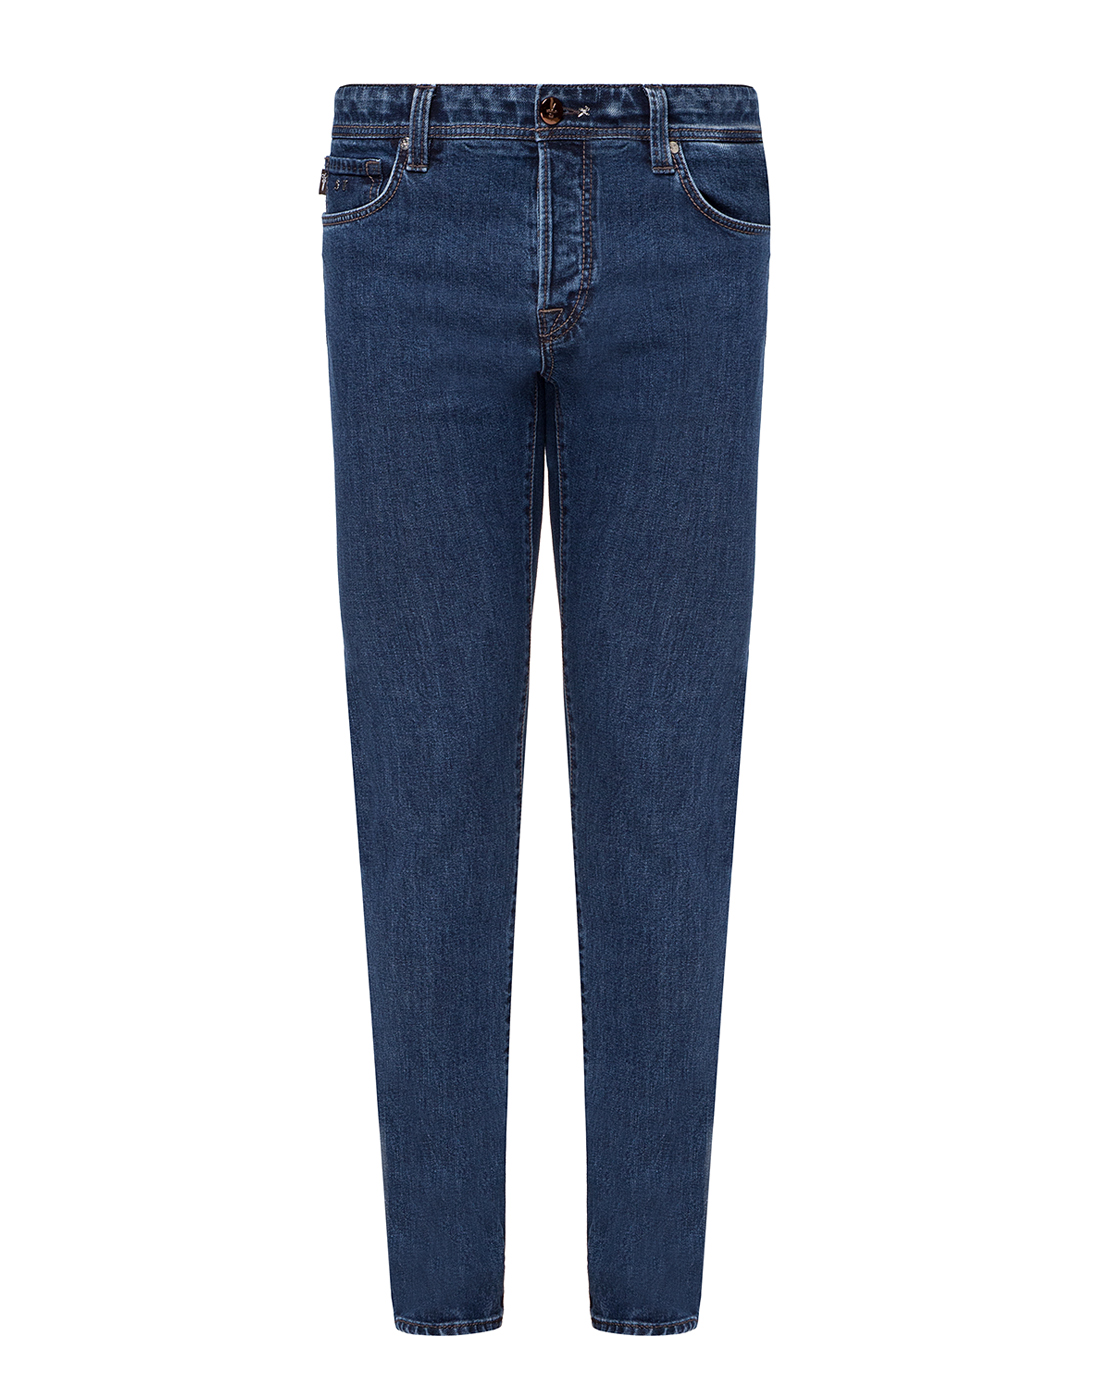 Мужские синие джинсы Tramarossa SD421 LEONARDO-1